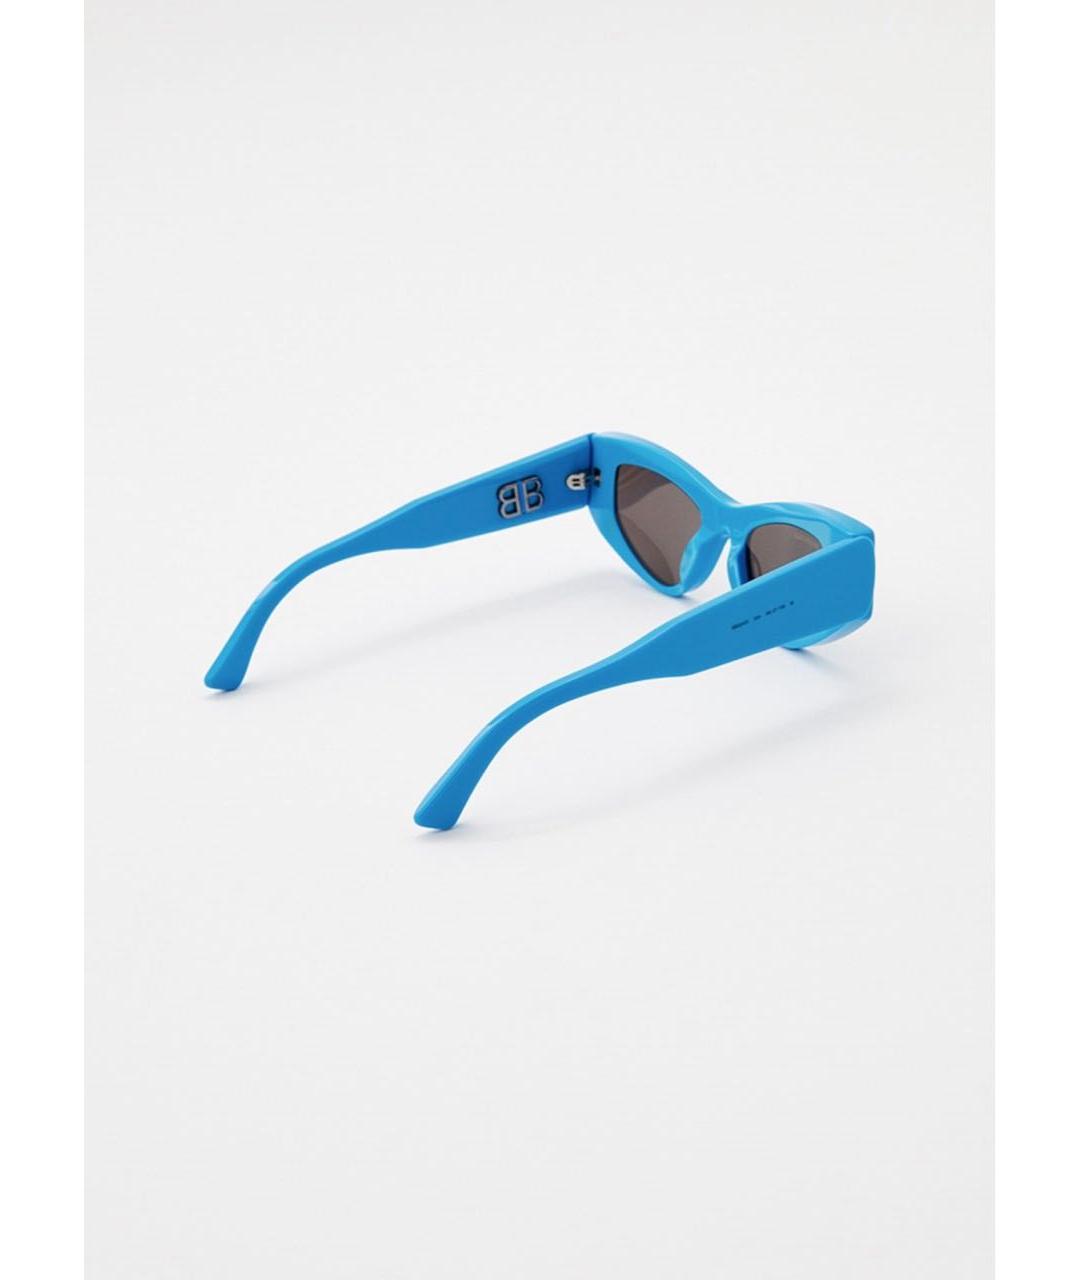 BALENCIAGA Синие солнцезащитные очки, фото 2